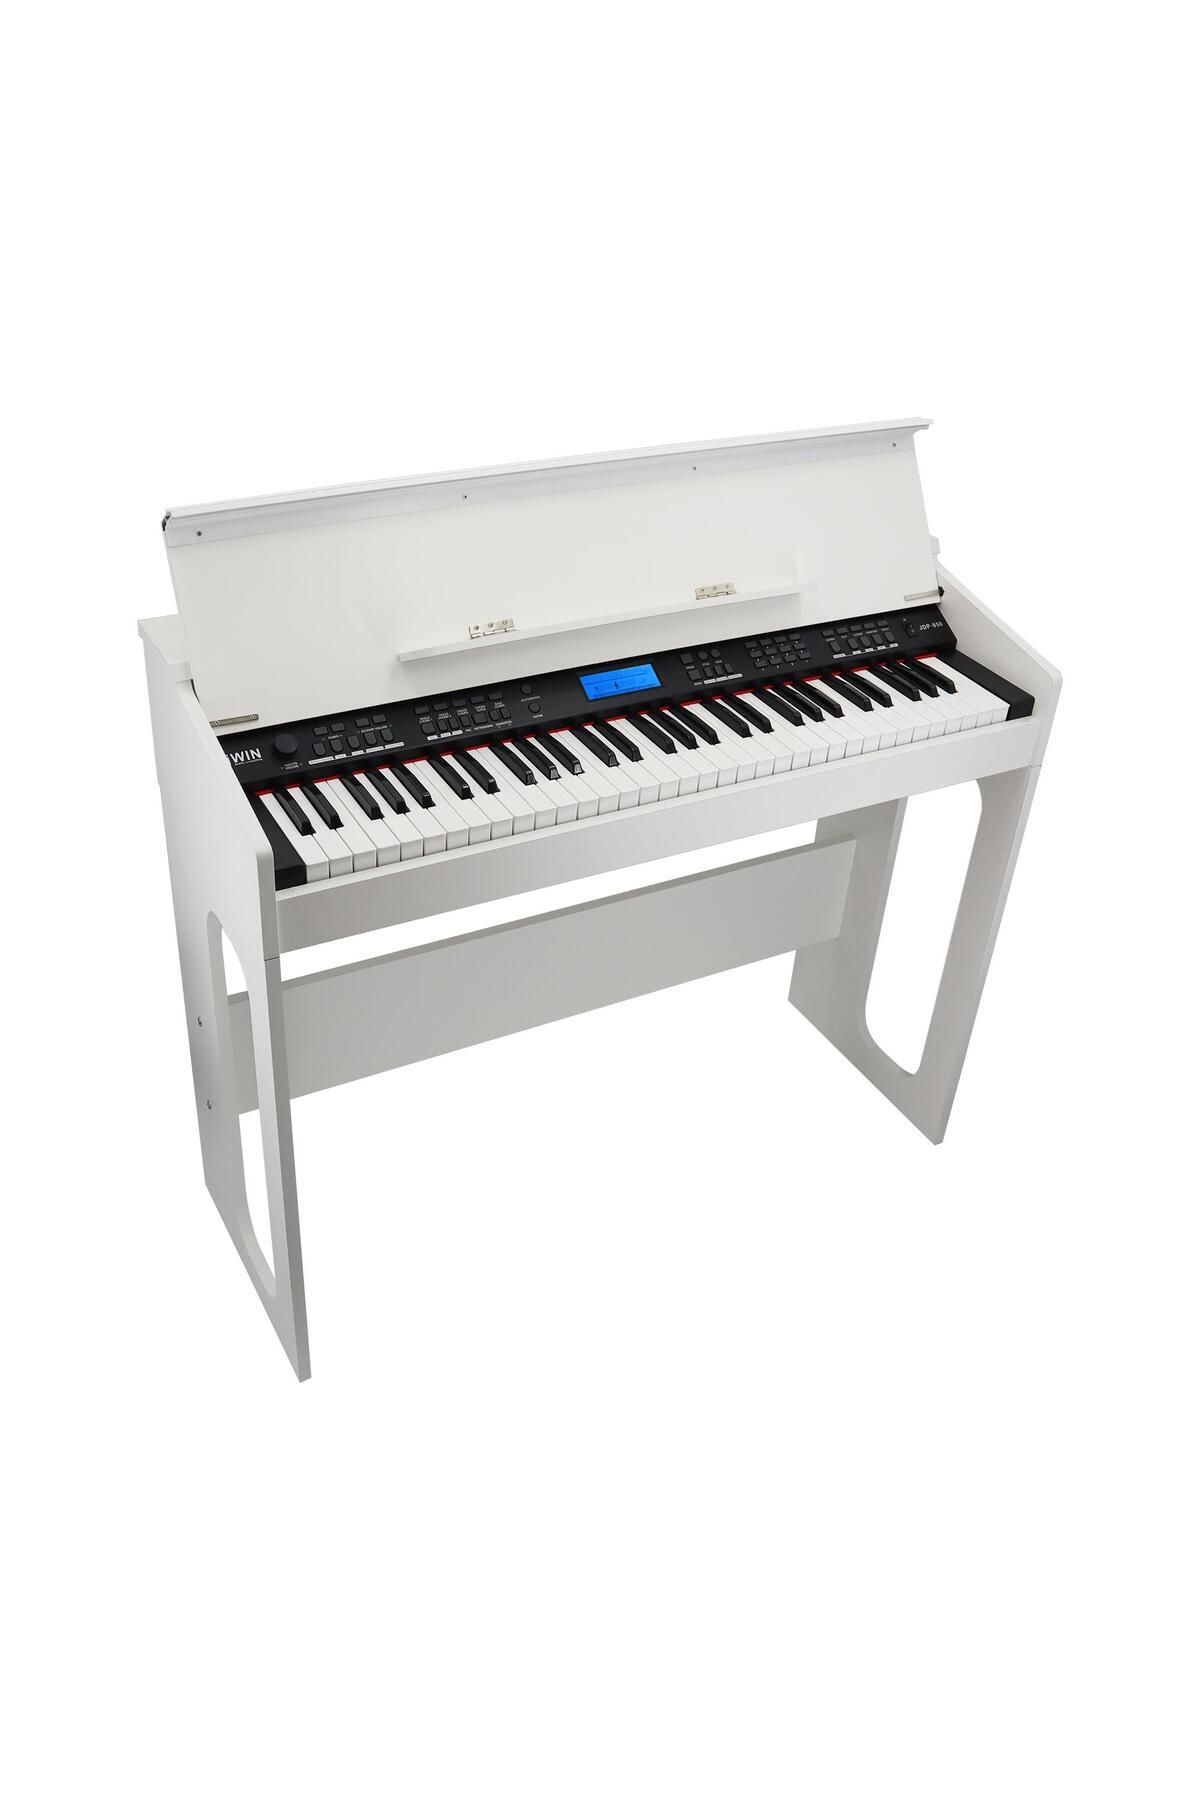 JWIN Jdp-950 Tuş Hassasiyetli 61 Tuşlu Dijital Piyano - Beyaz